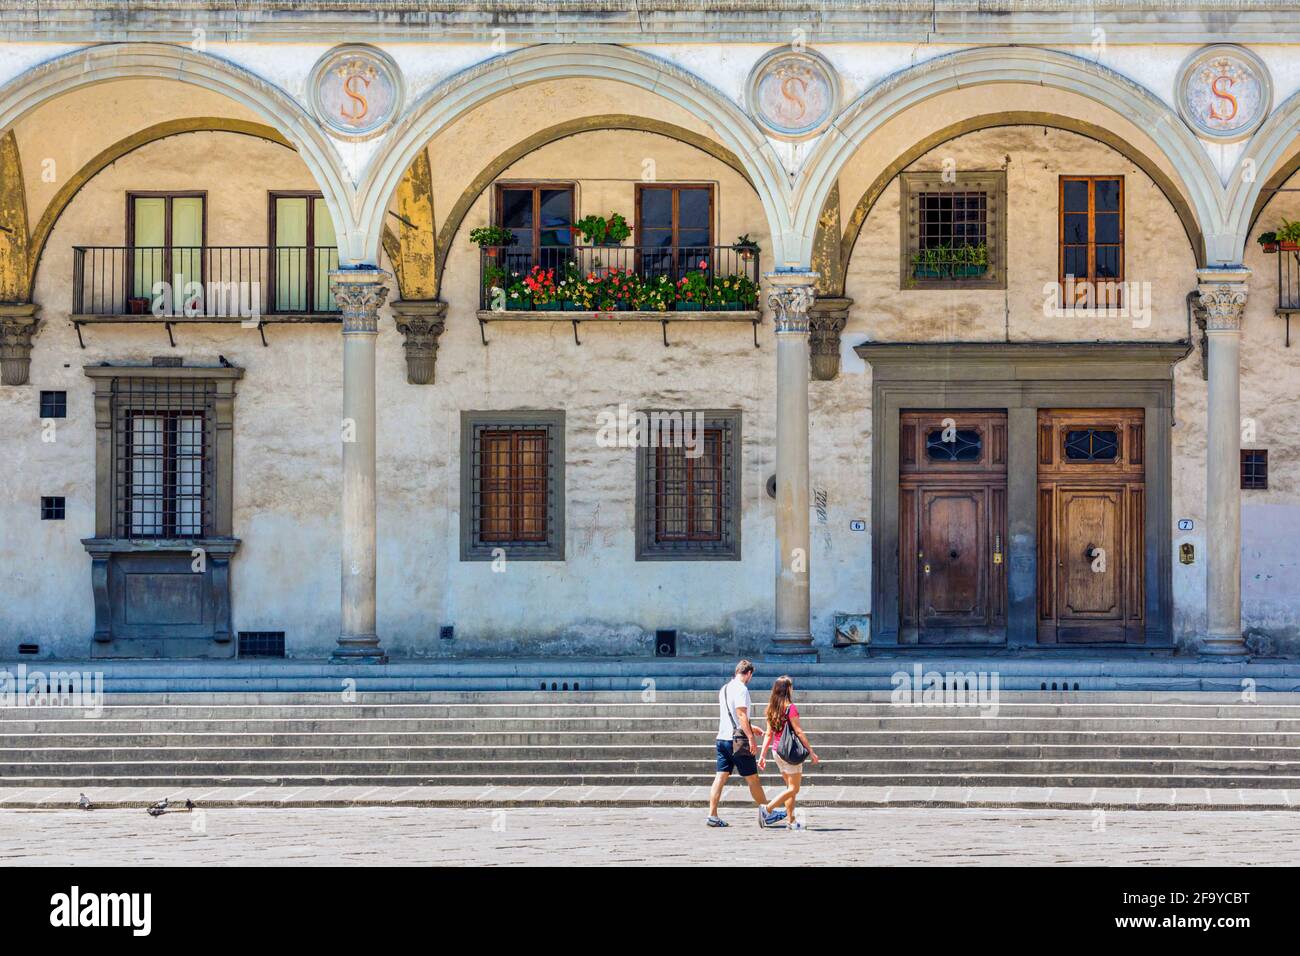 Provinz Florenz, Florenz, Toskana, Italien. Piazza della Santissima Annunziata. Das historische Zentrum von Florenz ist ein UNESCO-Weltkulturerbe. Stockfoto